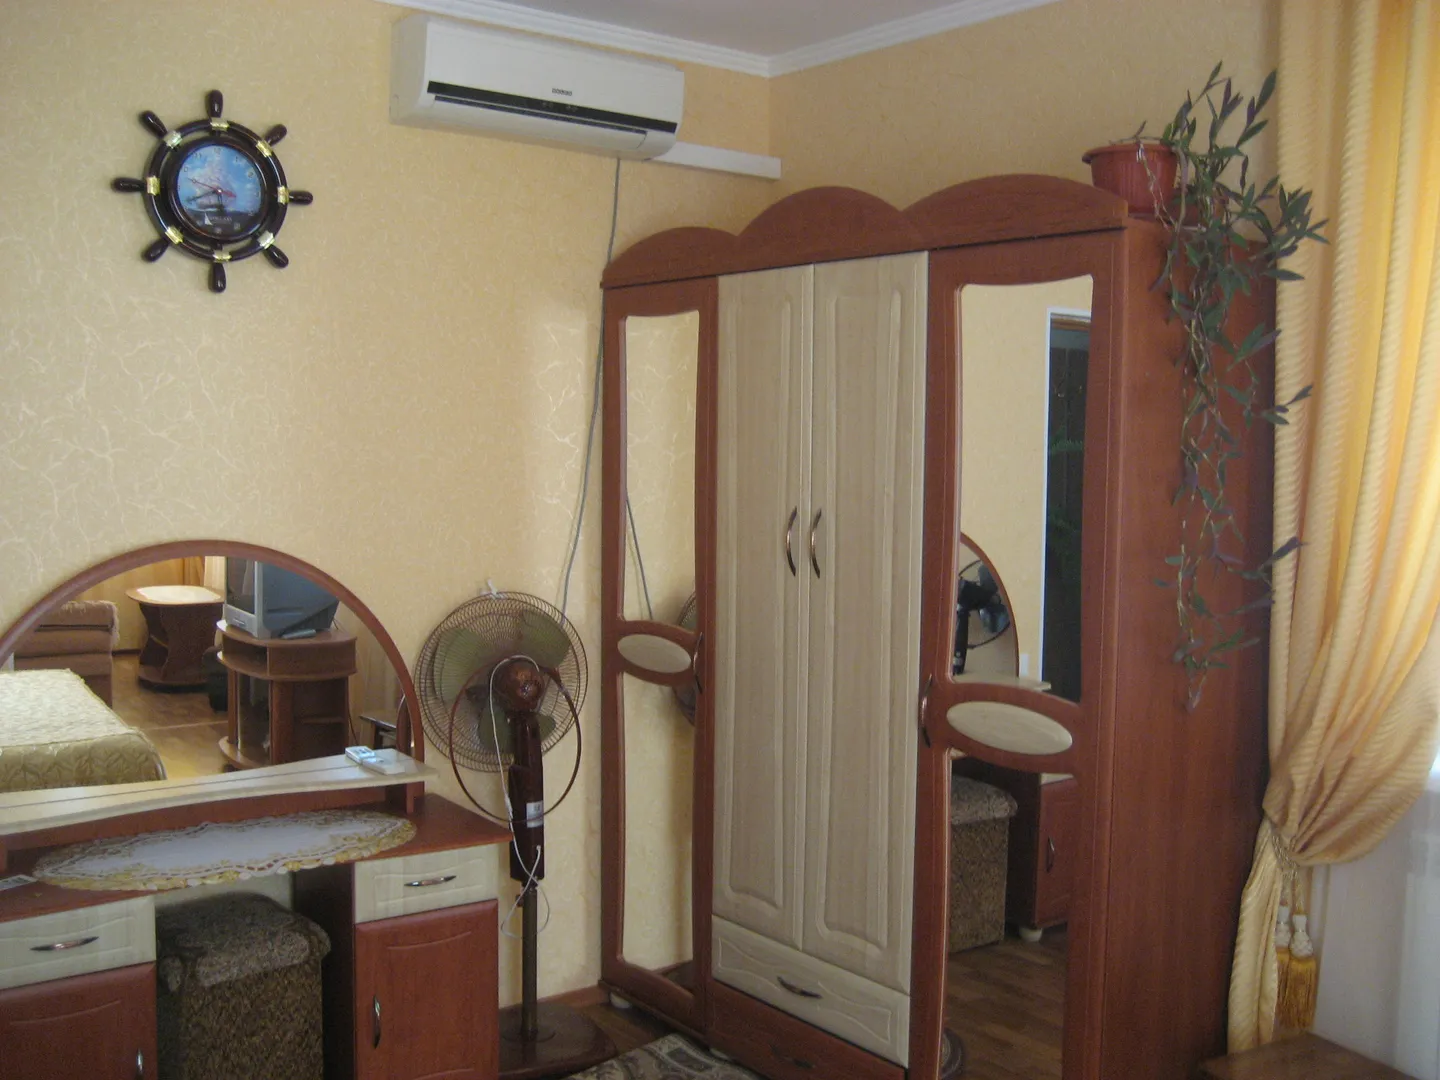 Спальная комната с мебелью. Справа балкон (видно в отражении зеркала)